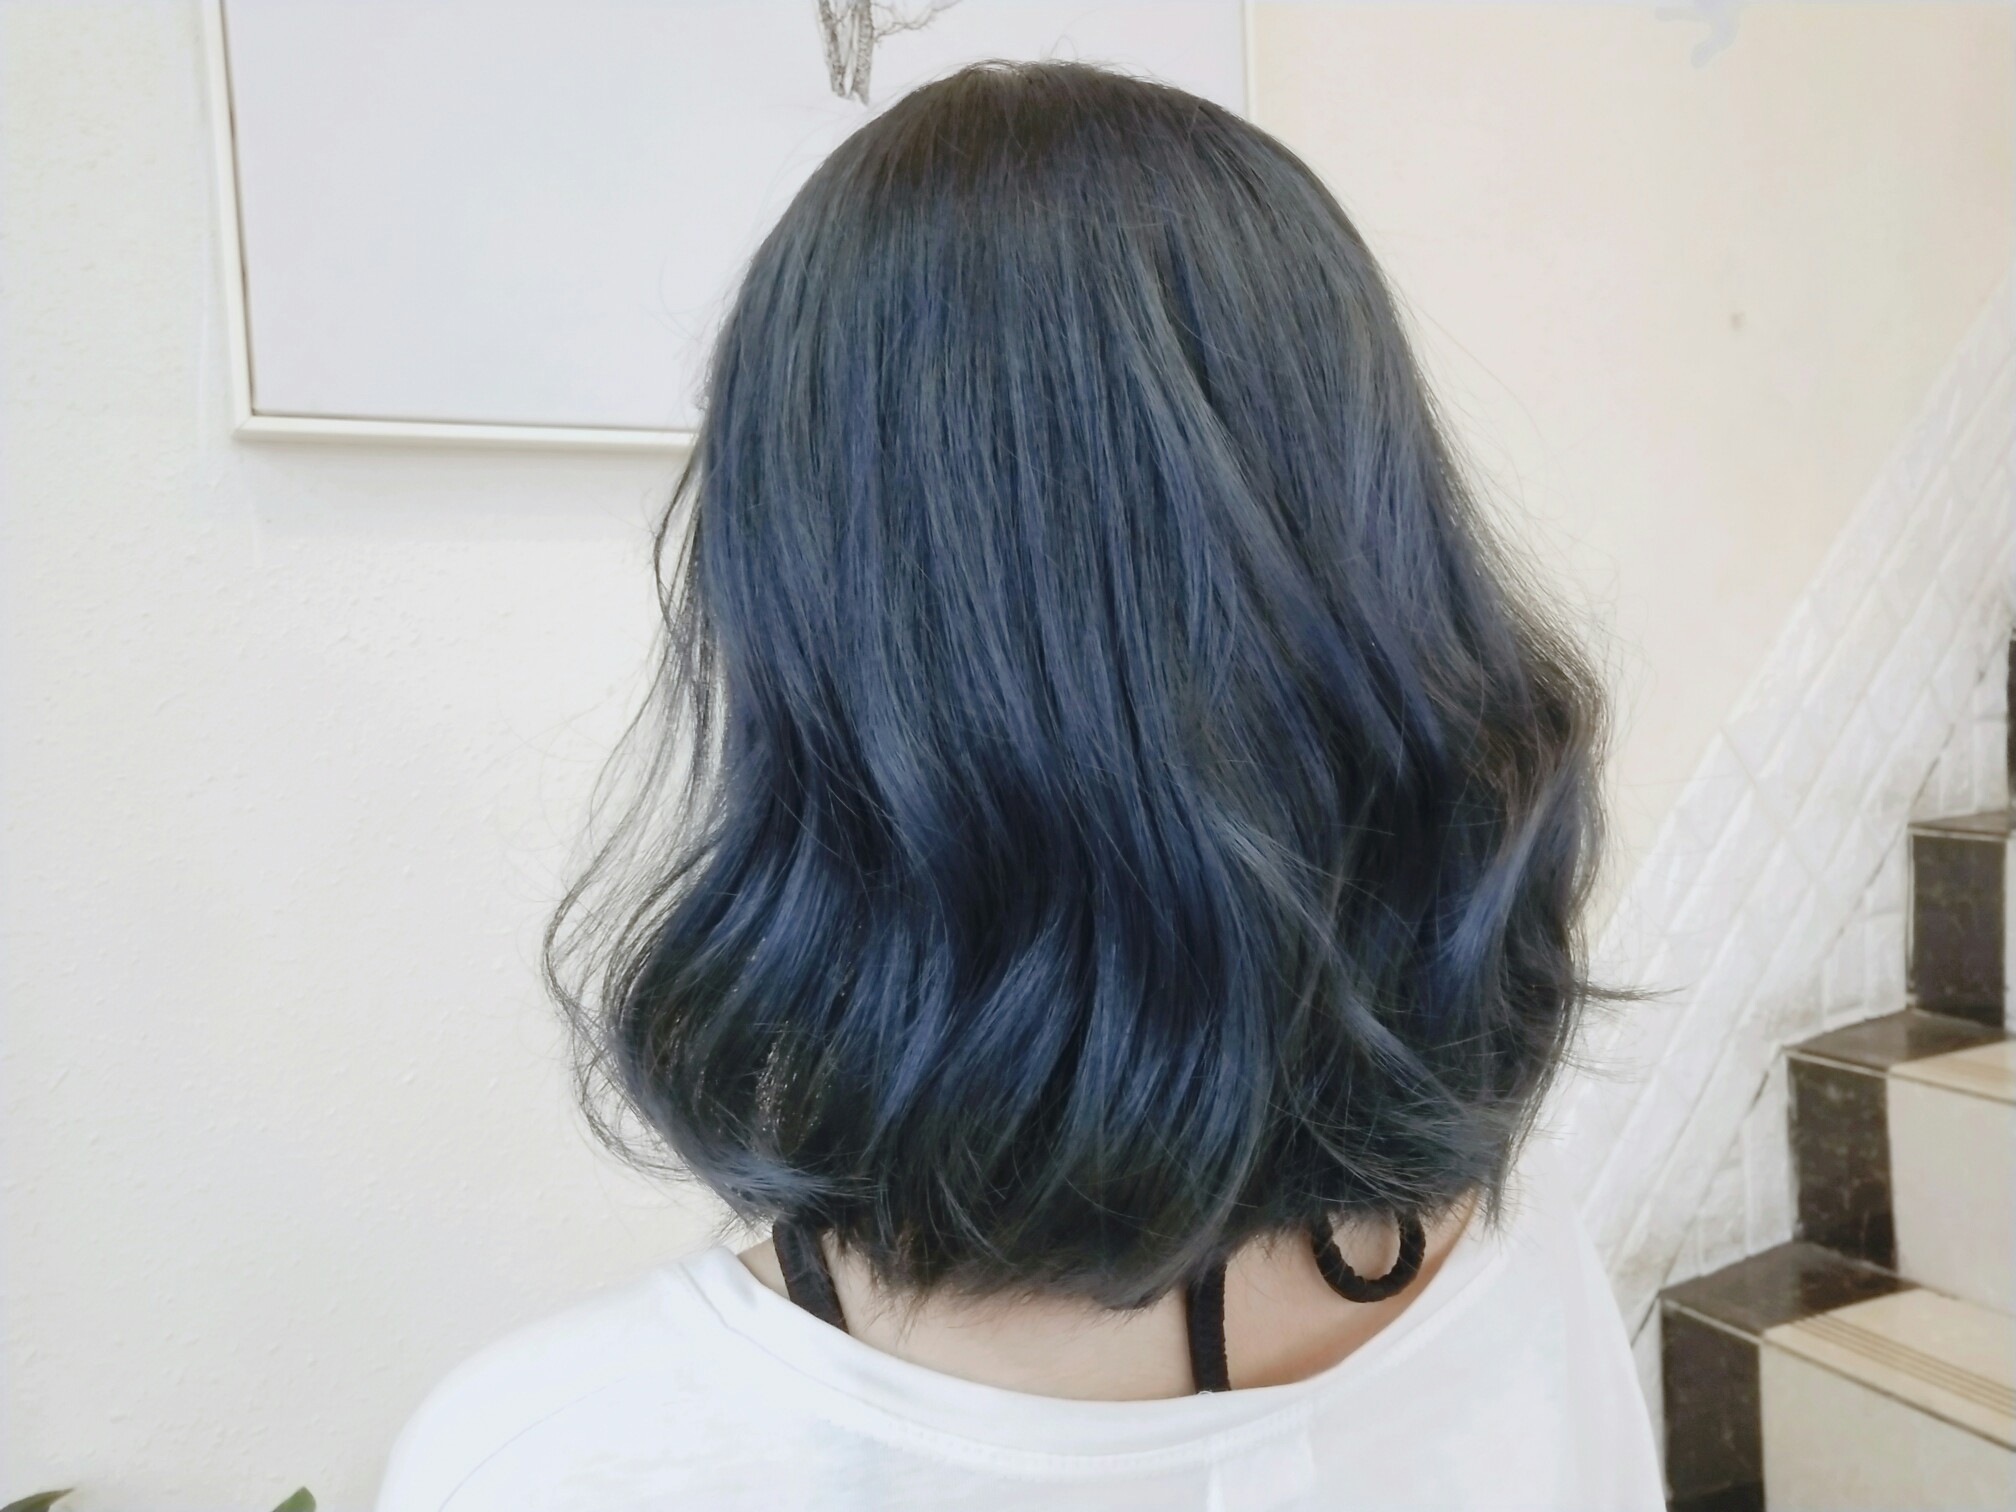 第一次染发 是心心念念的蓝黑呀!要想生活过得去 蓝蓝绿绿蓝蓝绿